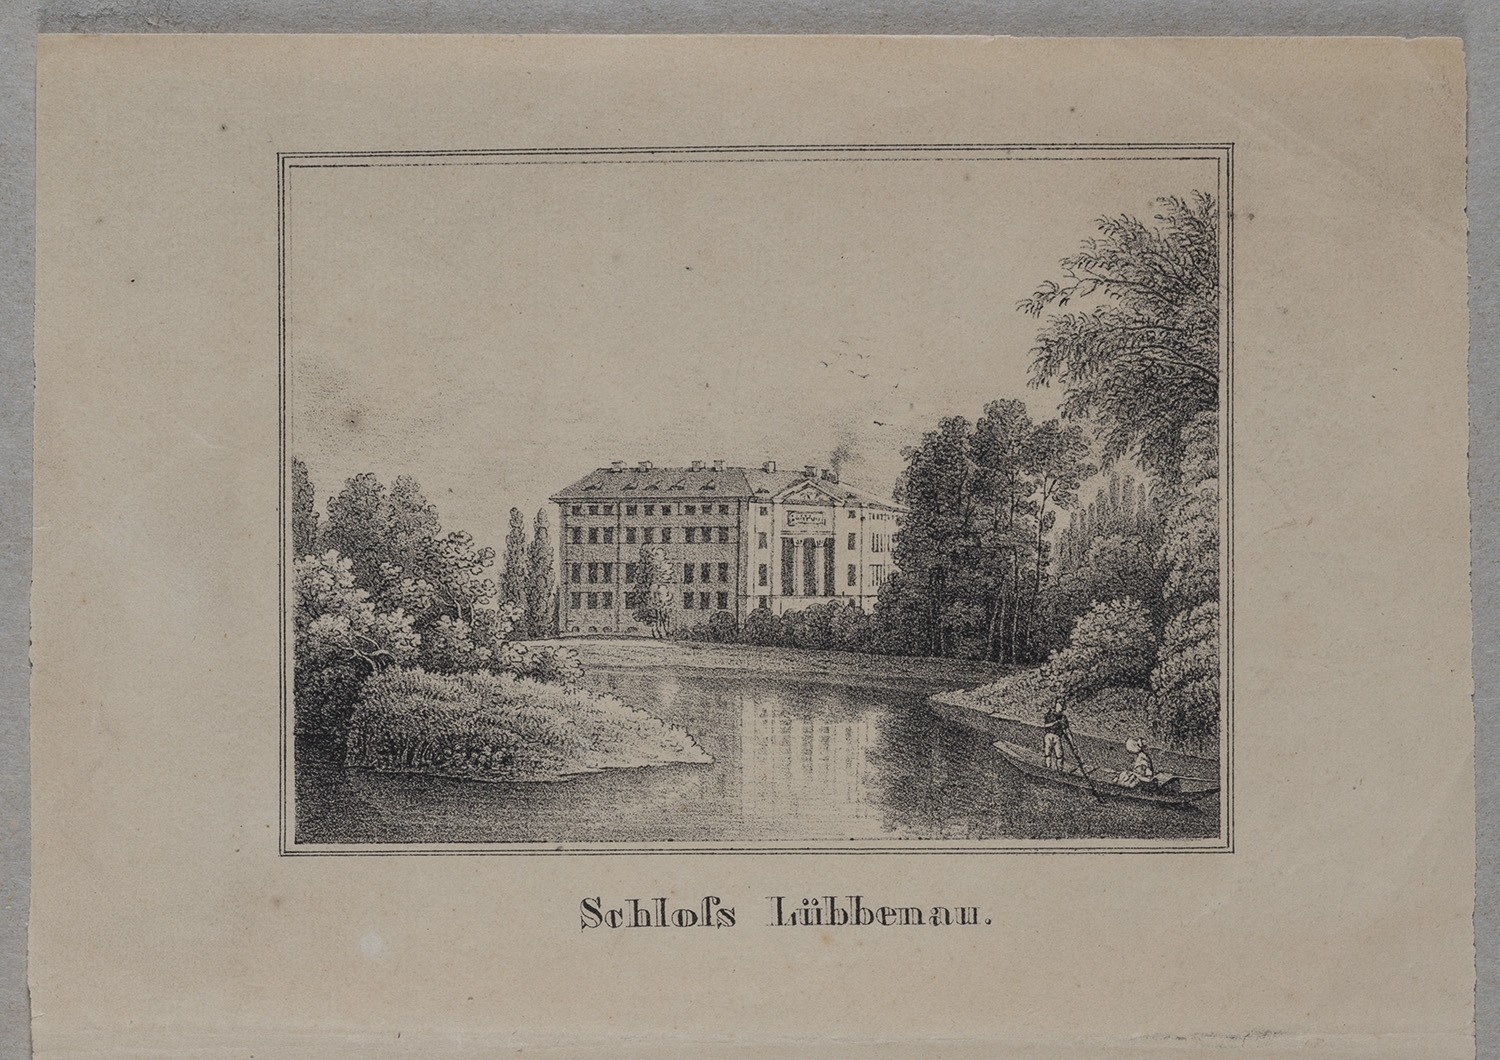 Lübbenau: Schloss (Landesgeschichtliche Vereinigung für die Mark Brandenburg e.V., Archiv CC BY)